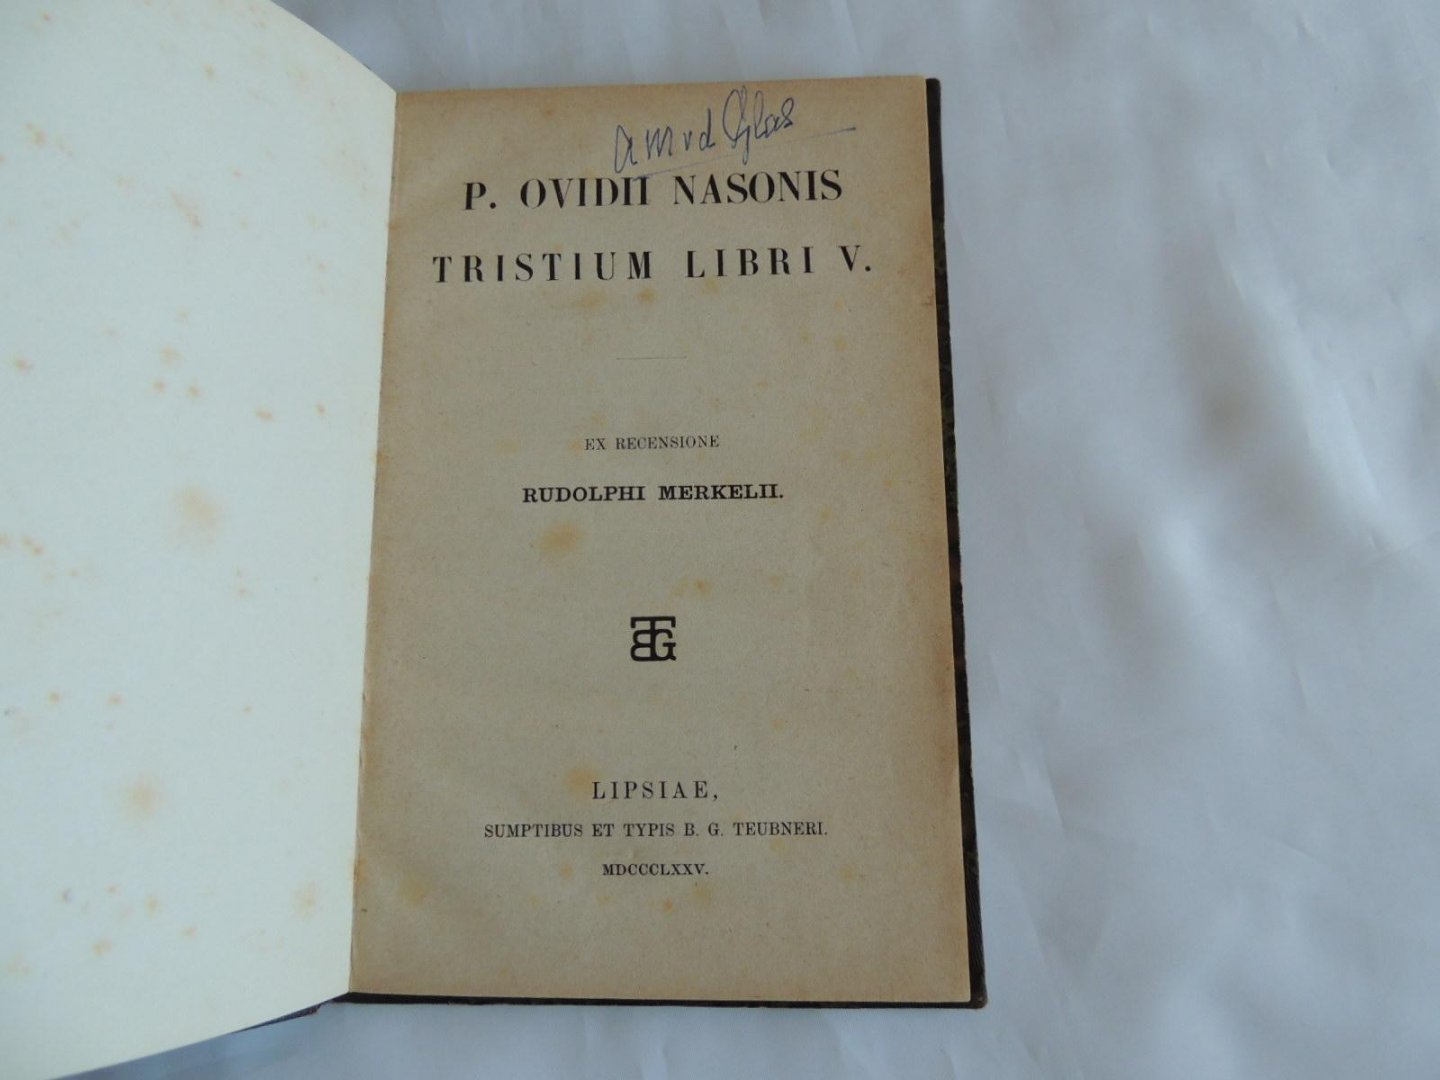 P. Publius Ovidii Nasonis  Publius Ovidius Naso -  Rudolphi Merkelii Merkel Rudolph - P. Ovidii Nasonis Tristium libri V. 5.